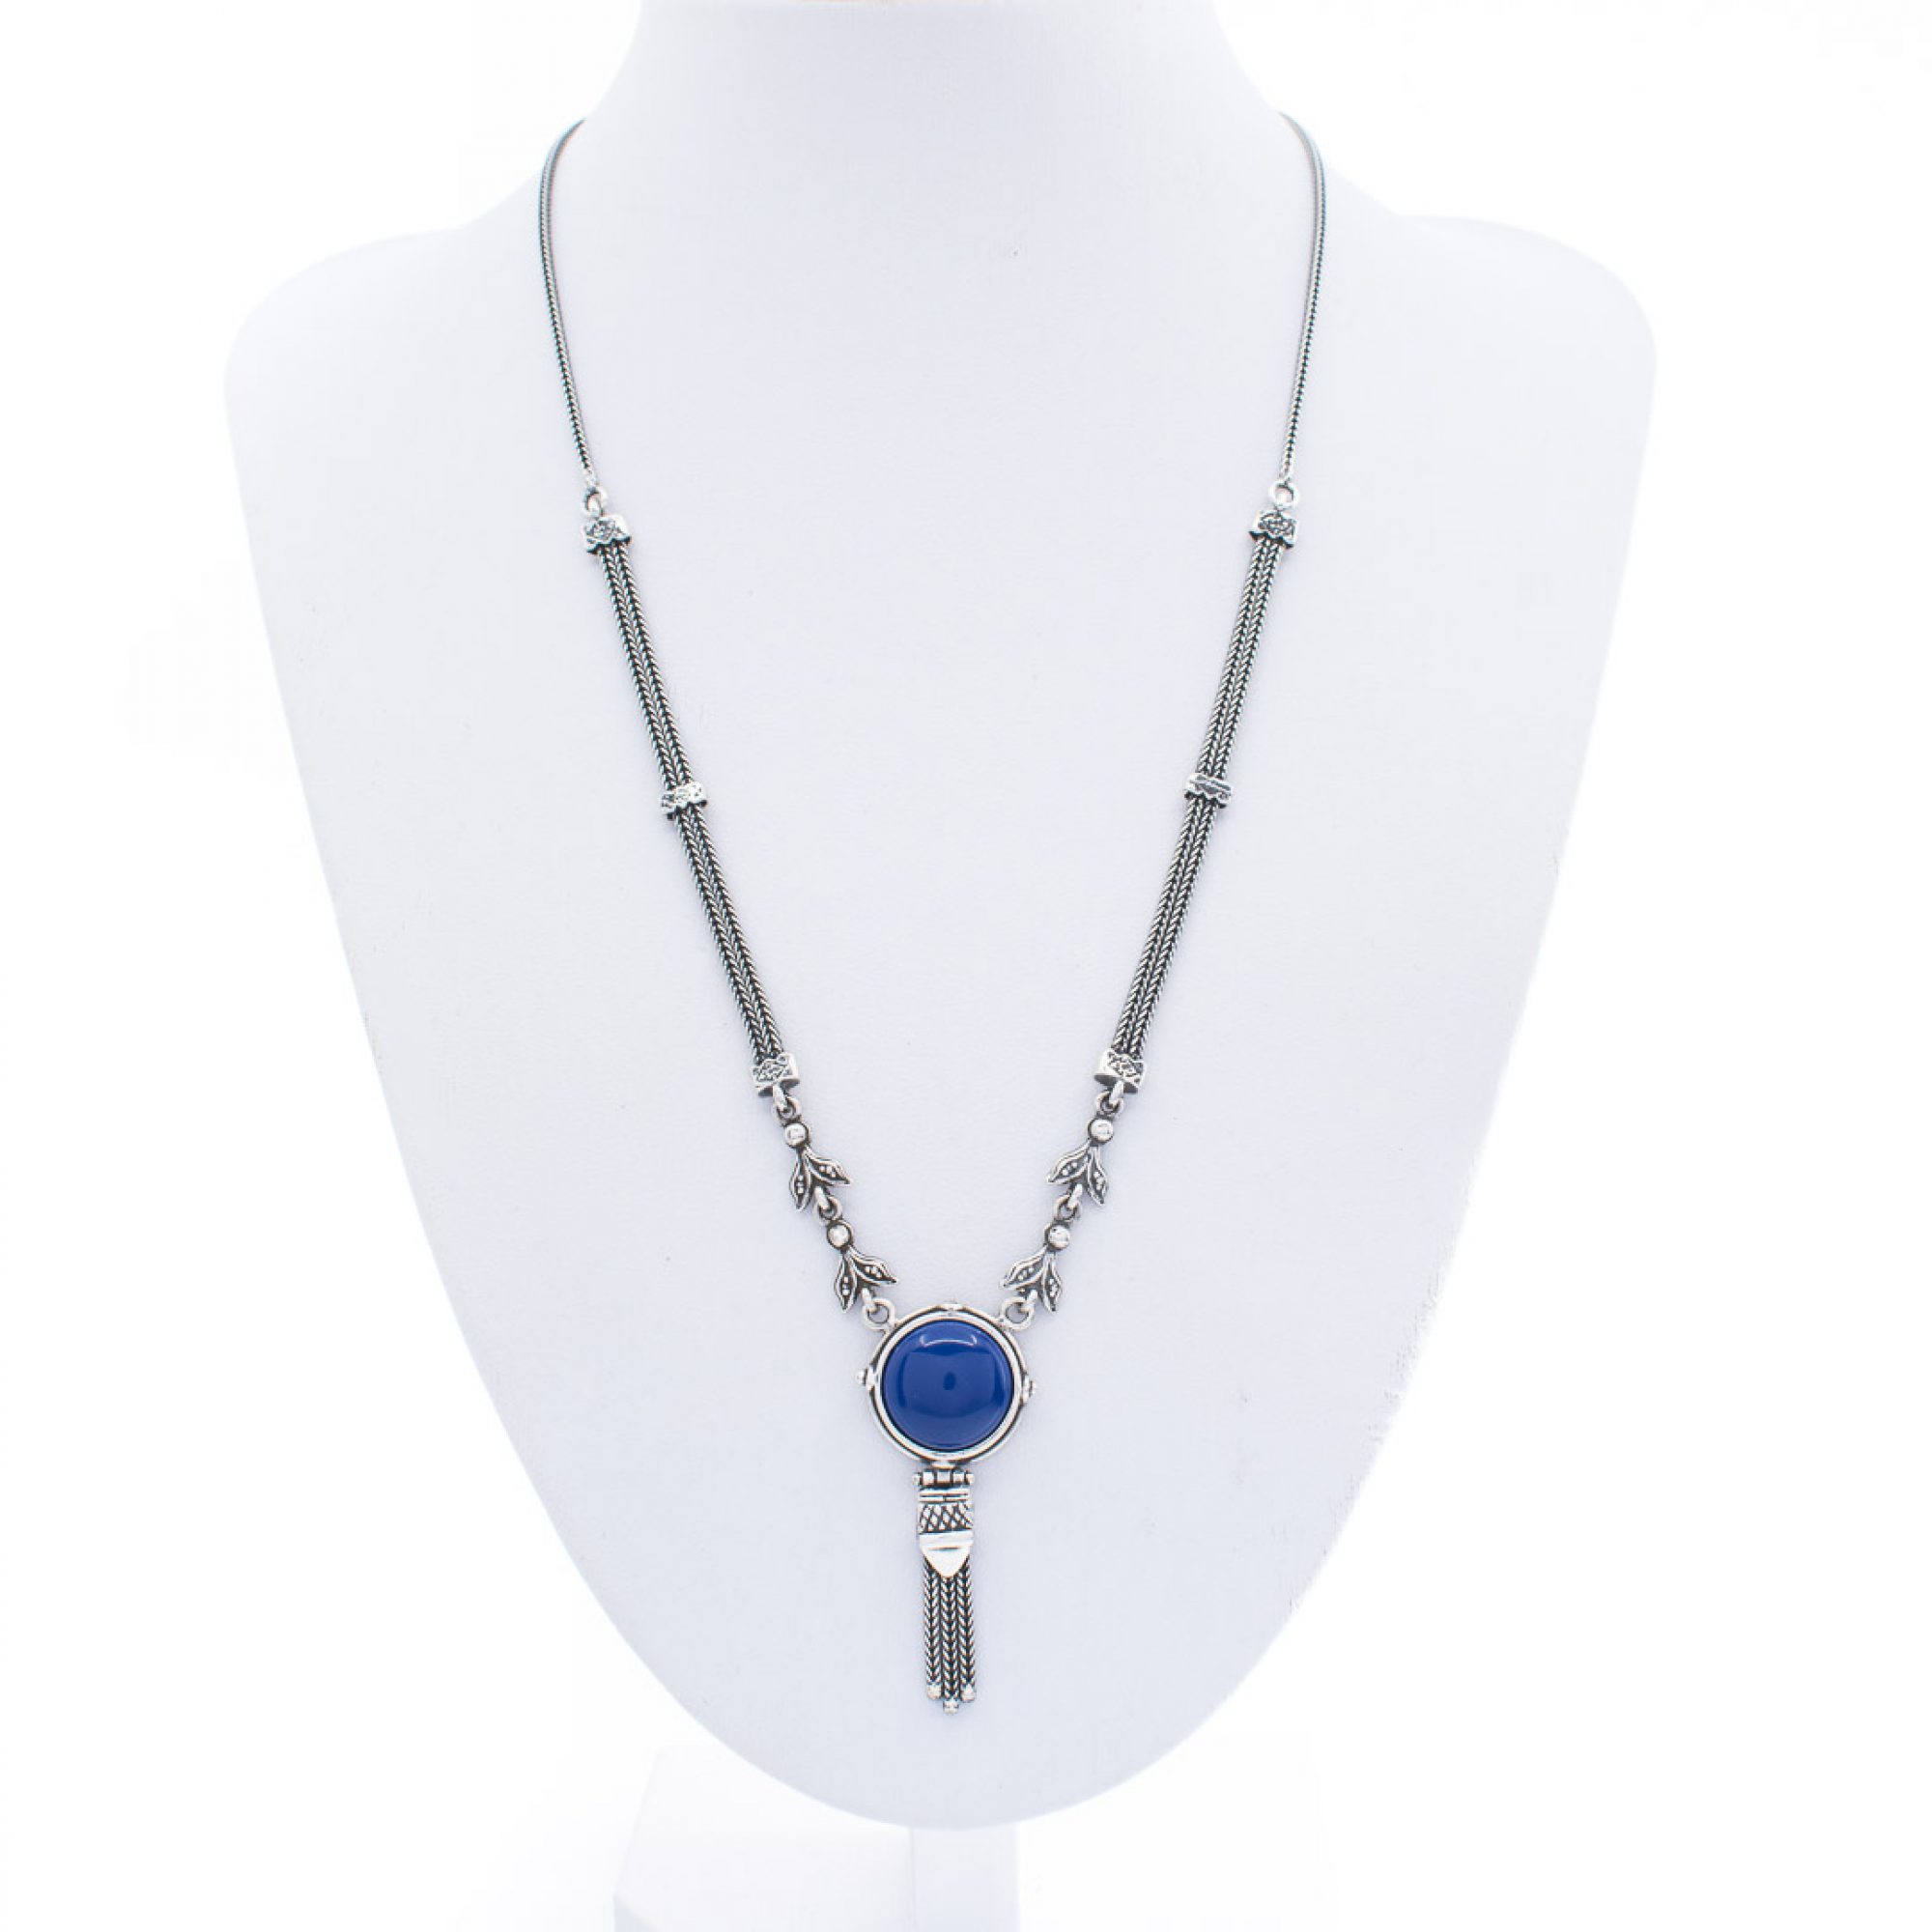 Oxidised necklace with lapis lazuli stone